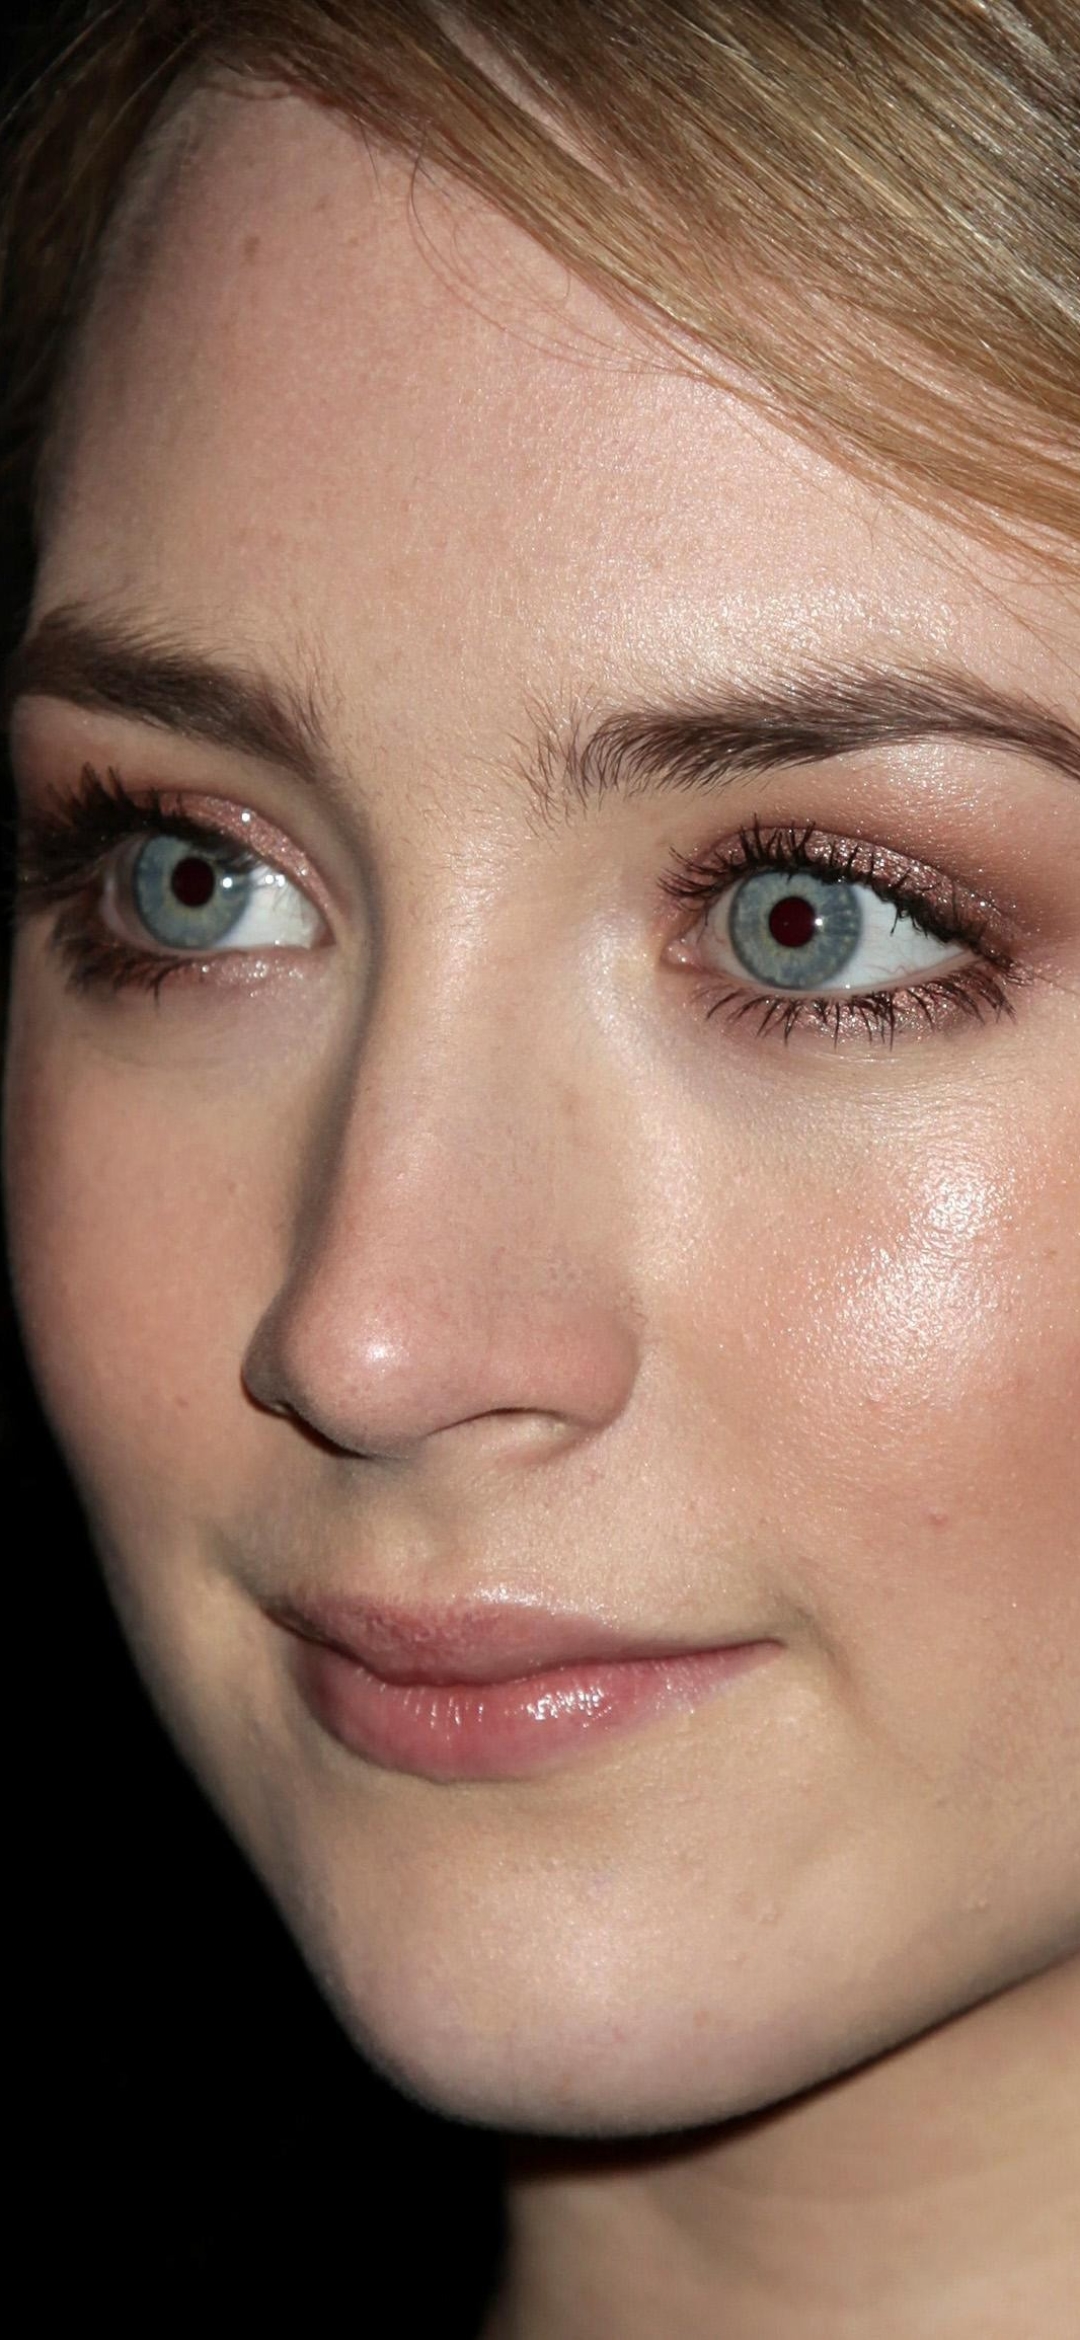 Descarga gratuita de fondo de pantalla para móvil de Celebridades, Saoirse Ronan.